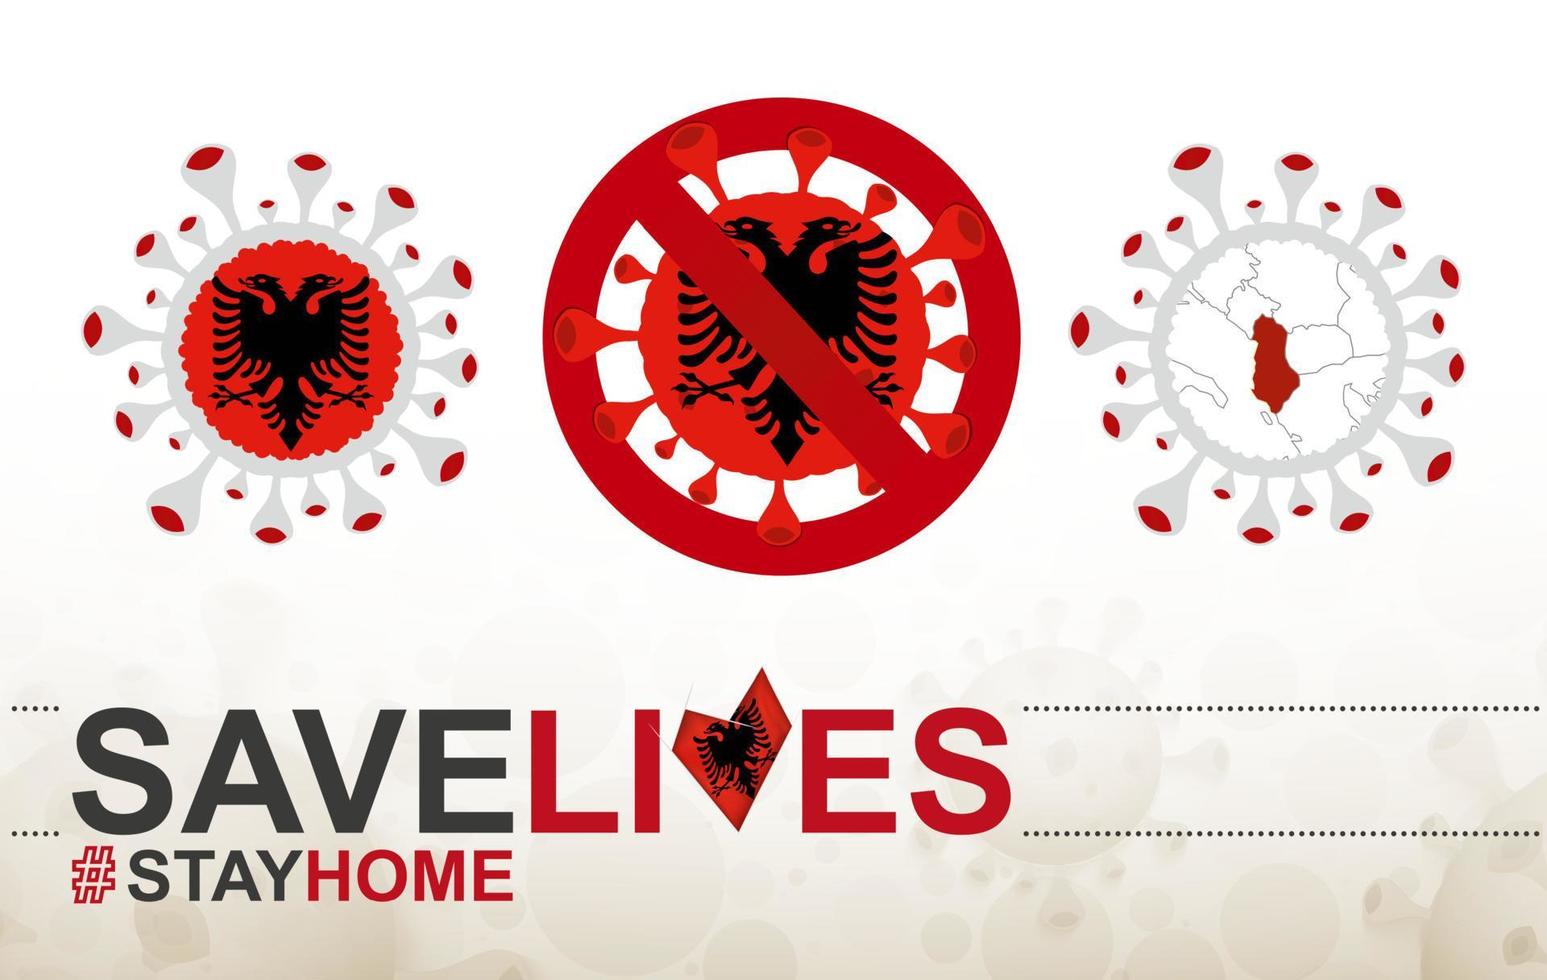 coronaviruscel met vlag en kaart van albanië. stop covid-19 teken, slogan red levens blijf thuis met vlag van albanië vector